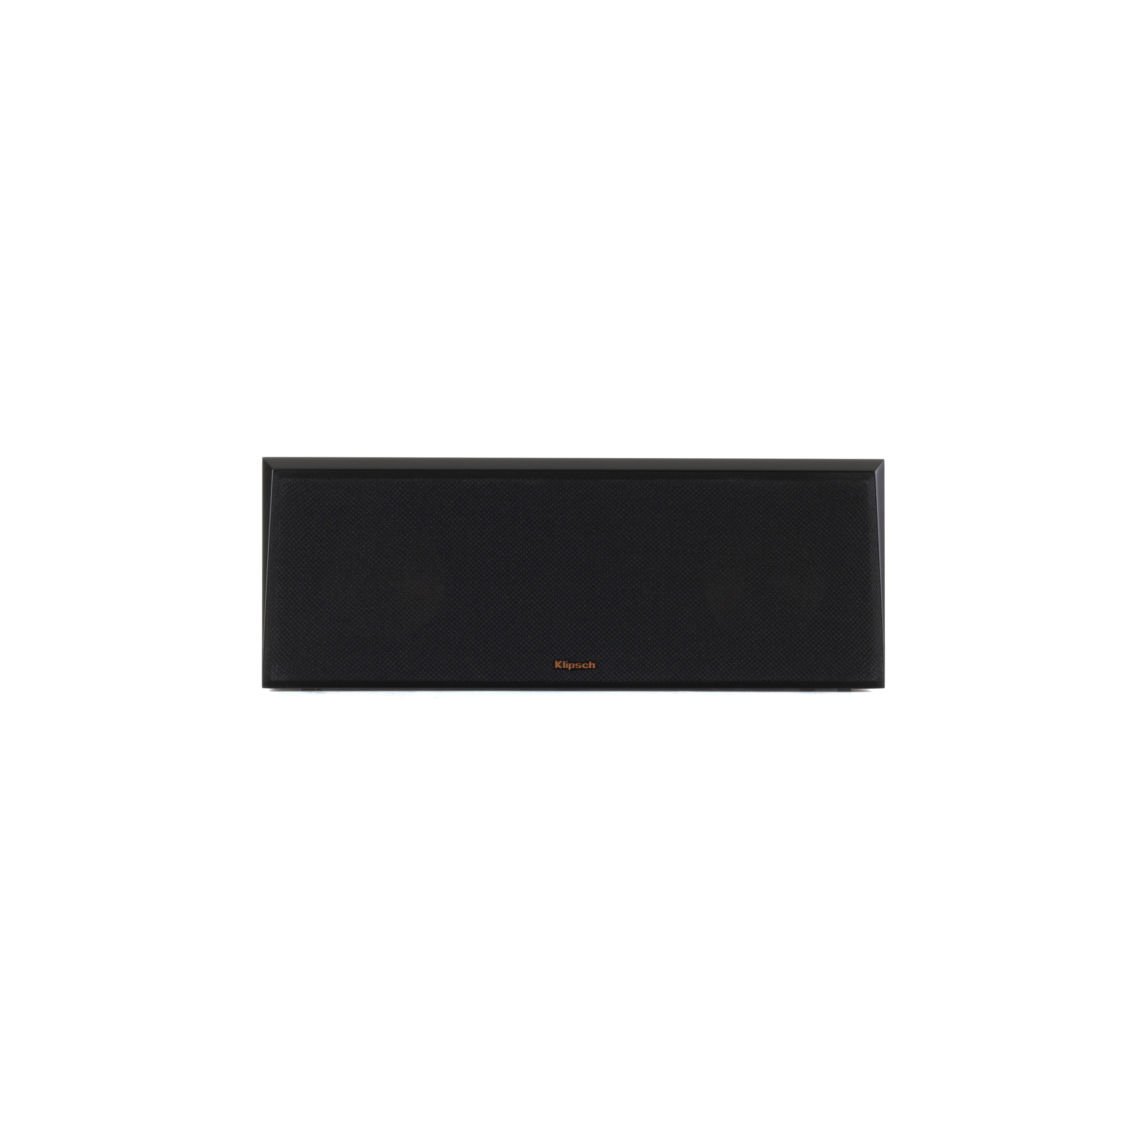 rp-500c_black-vinyl_front-grille